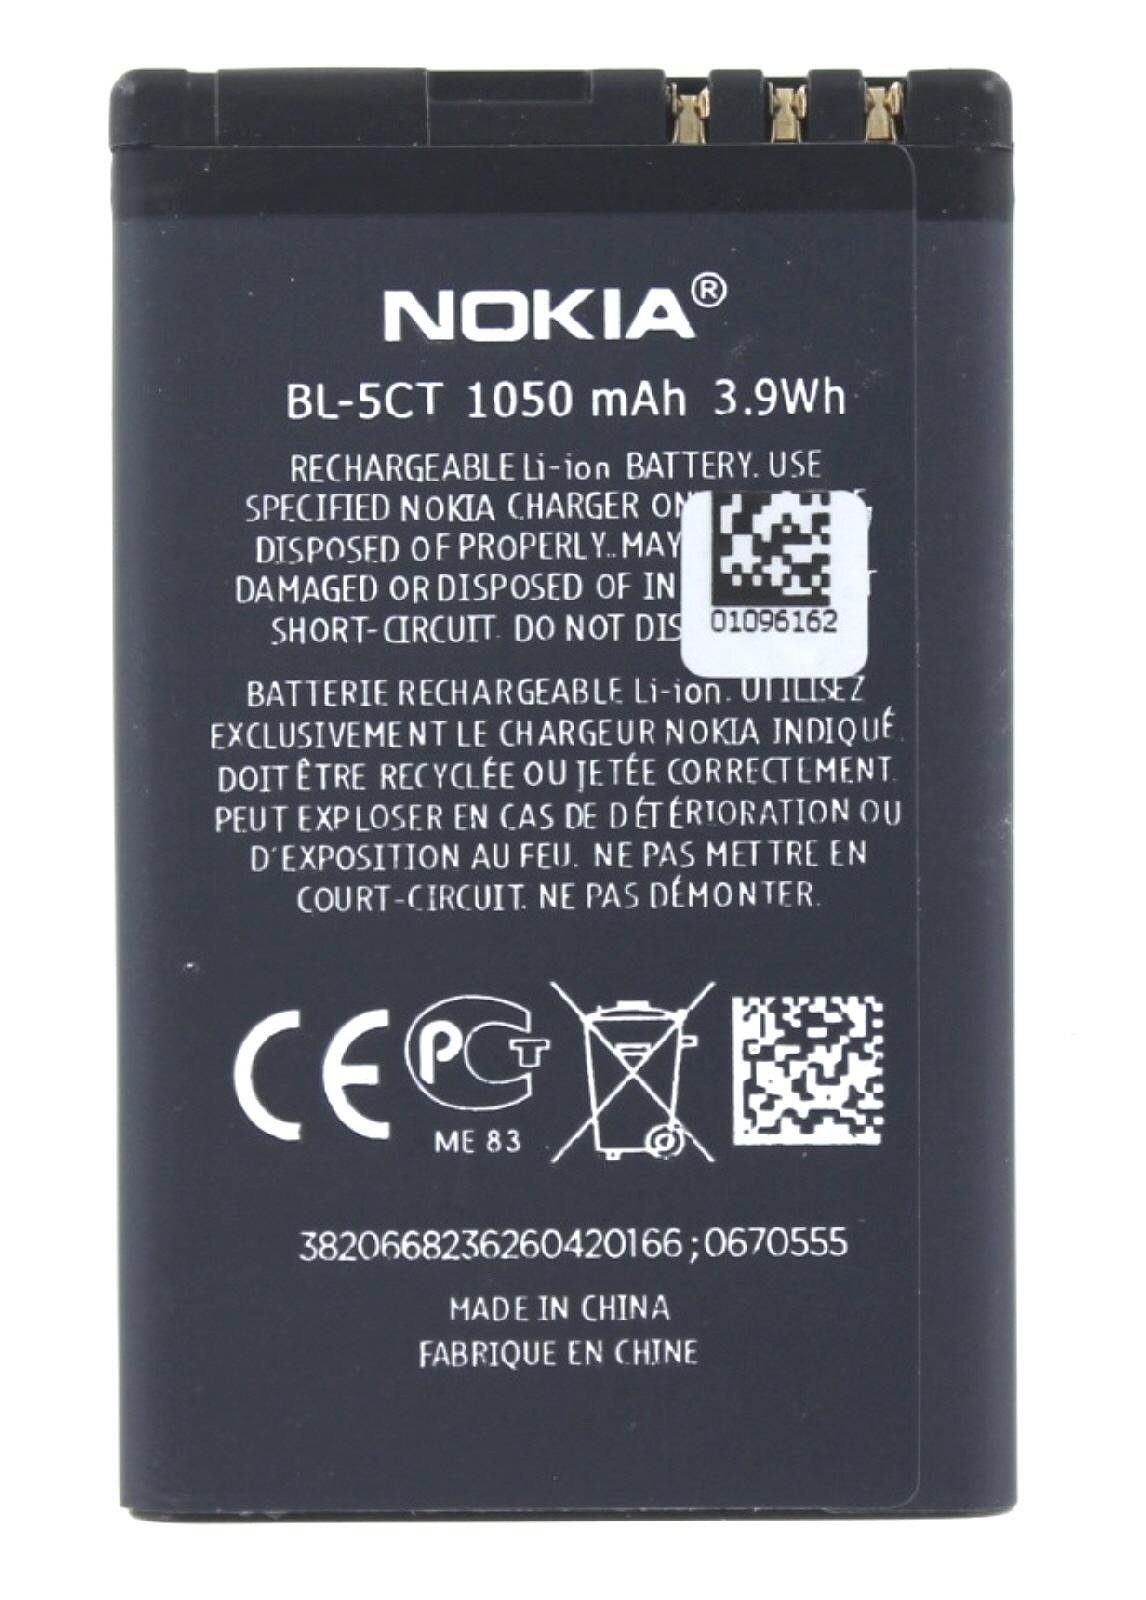 Nokia Akkupacks Original C5 5-03) Akku für mAh Akku Nokia 1050 C (nicht